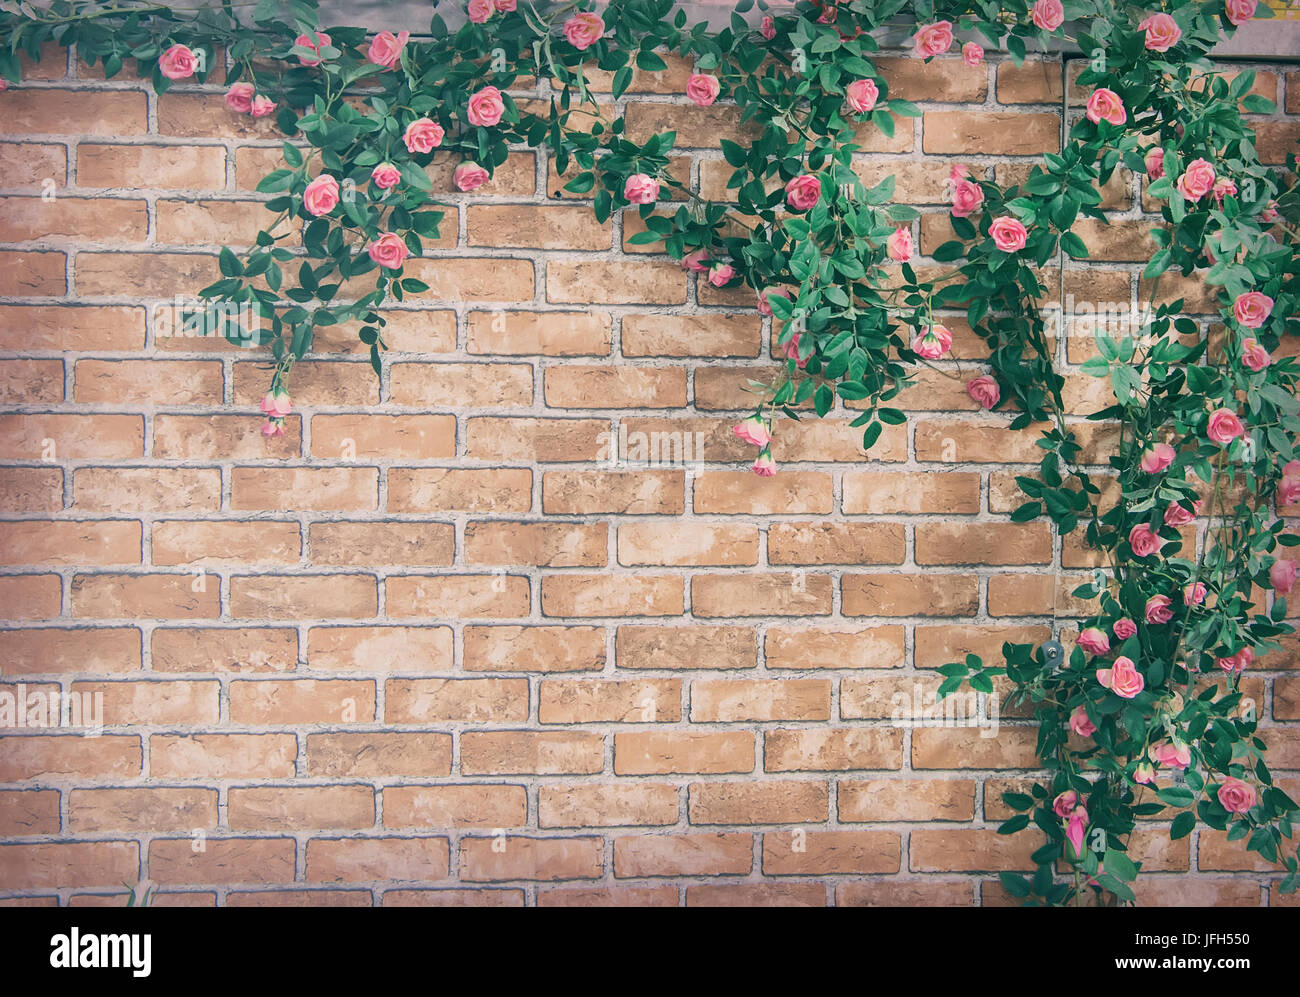 Bush rosier grimpant sur un mur de brique, décor de fleurs artificielles  Photo Stock - Alamy